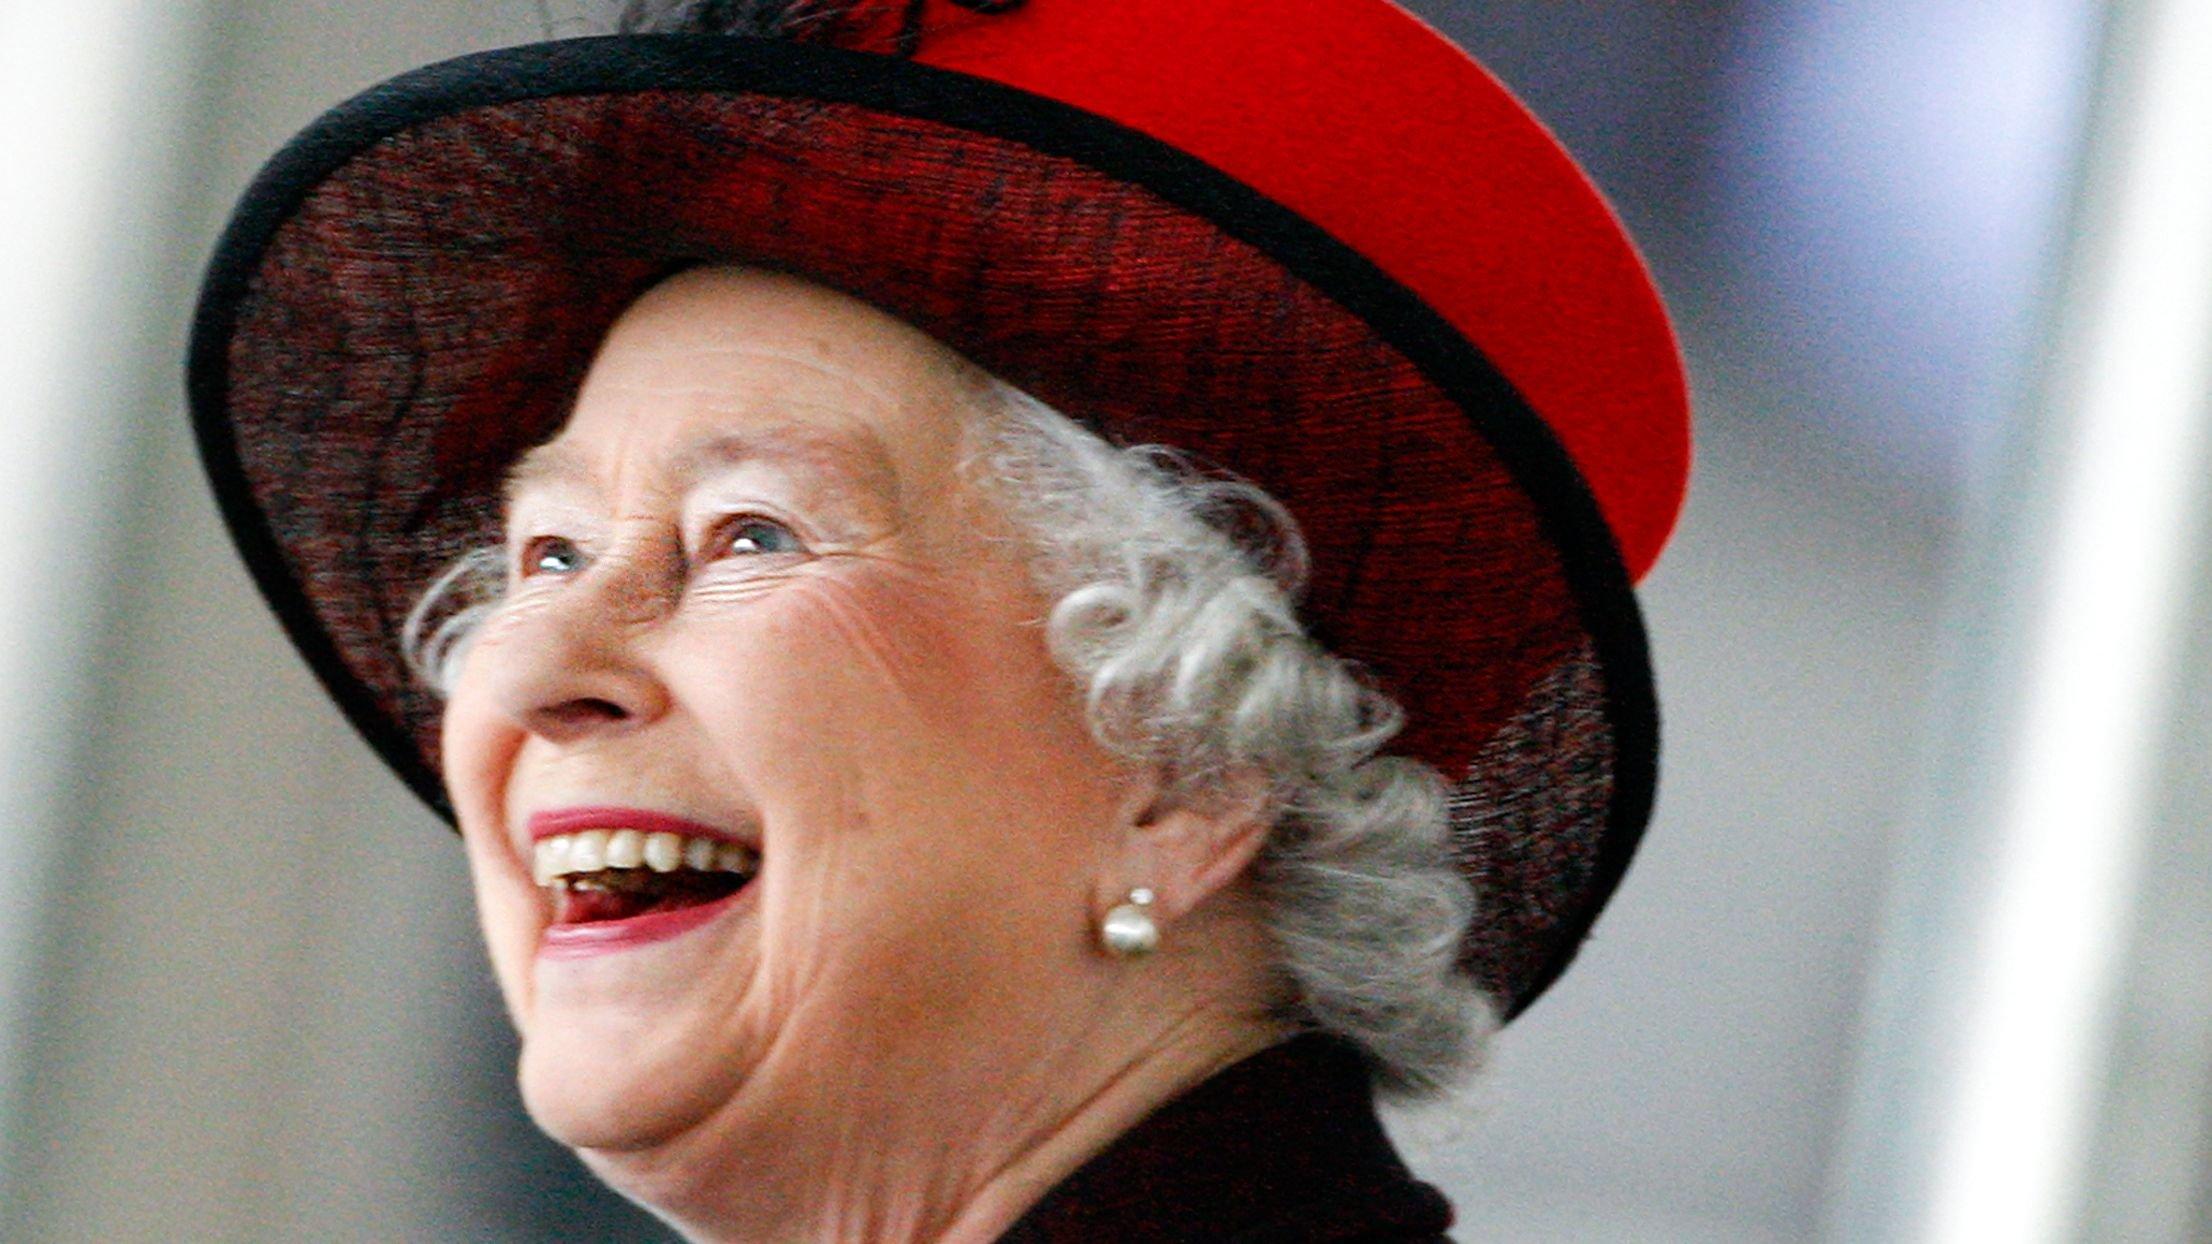 Queen Elizabeth II looks on